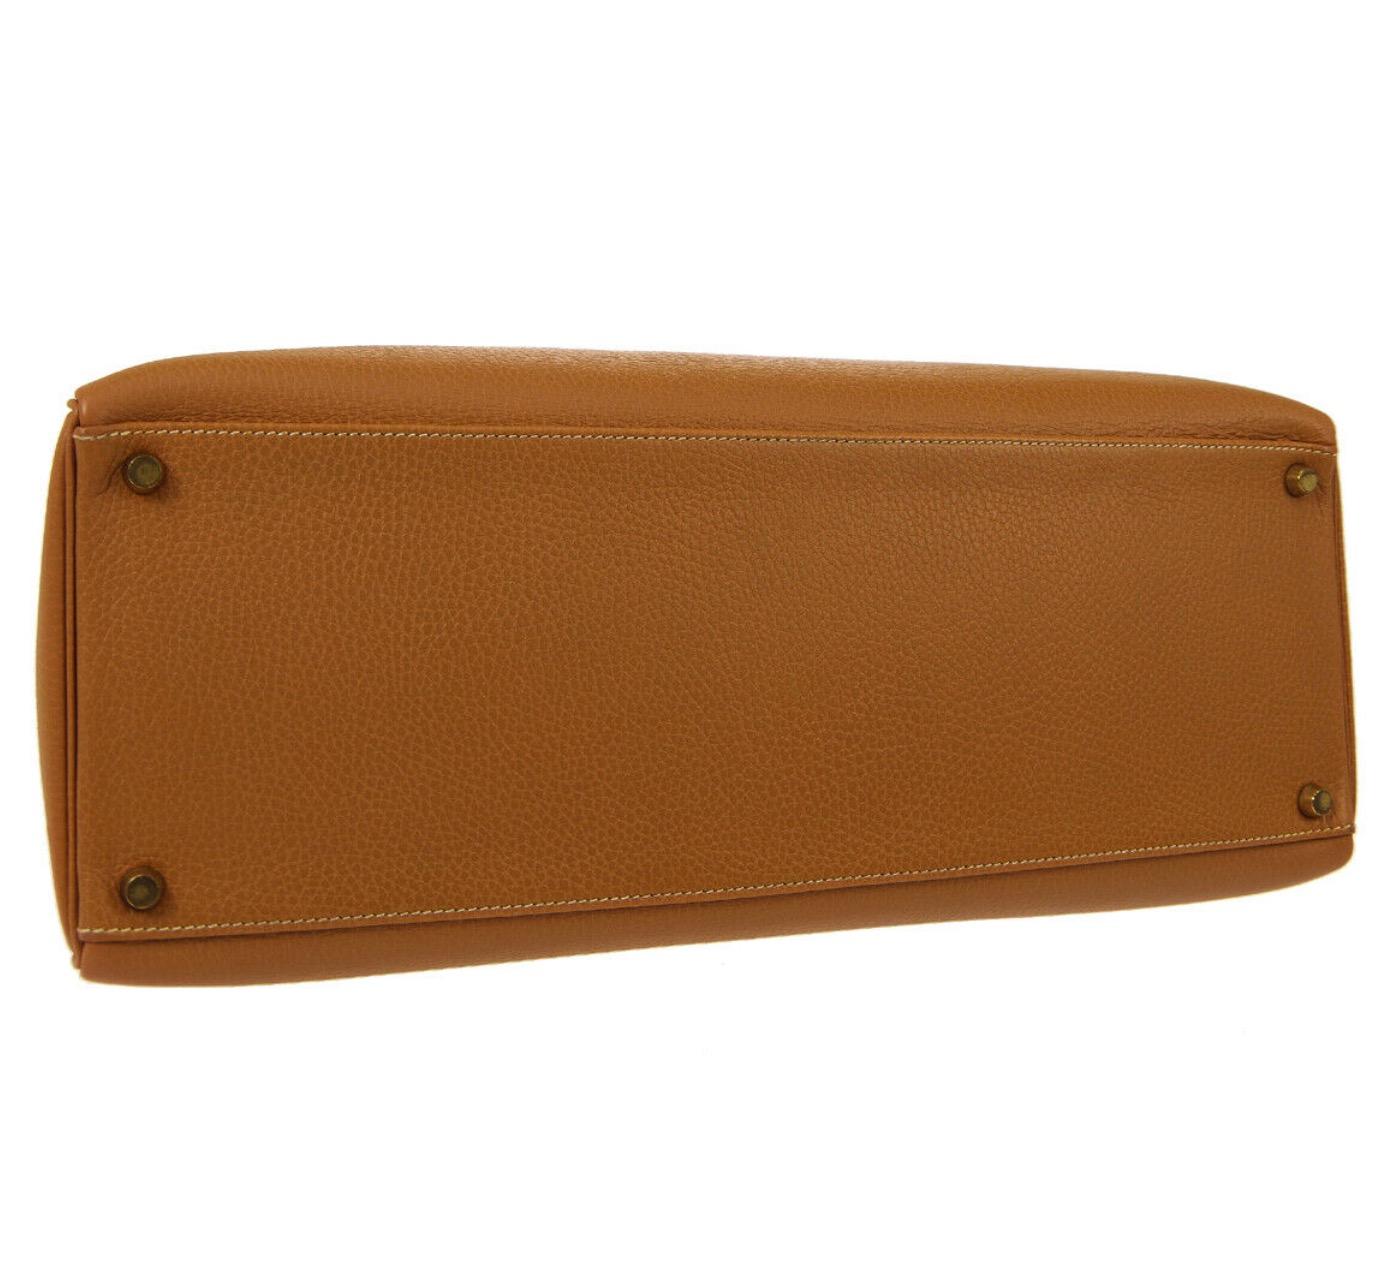 Hermes Kelly 40 Mustard Leather Top Handle Satchel Carryall Tote Flap Bag 1